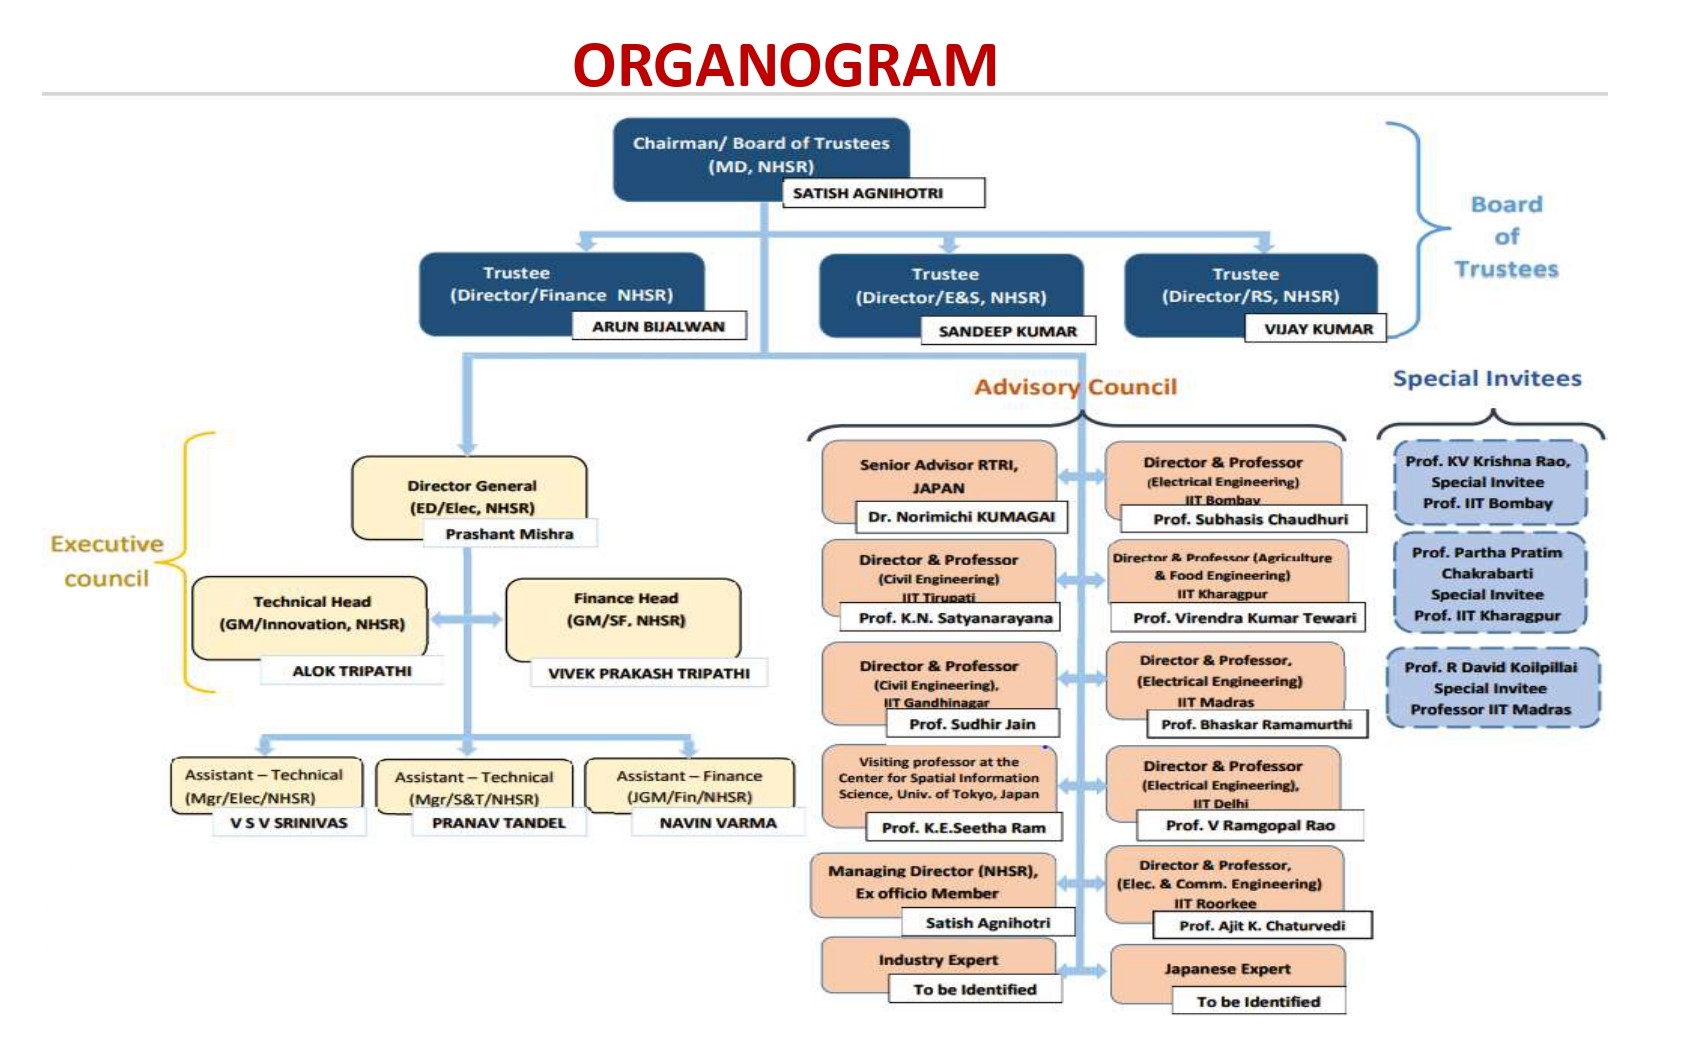 Organization Chart of HSR Innovation Centre